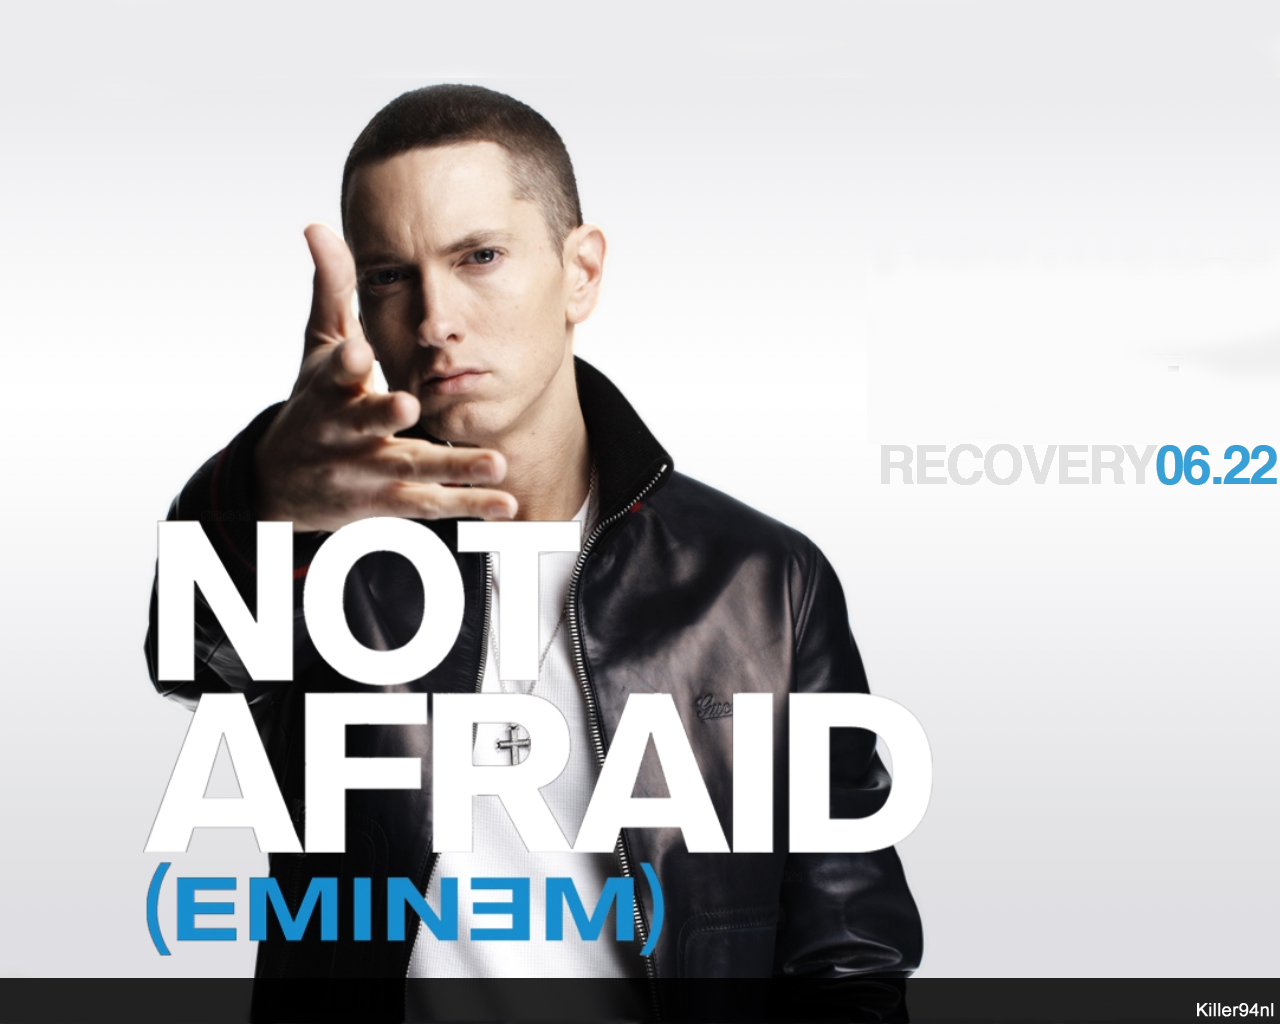 Album Eminem 1280x1024